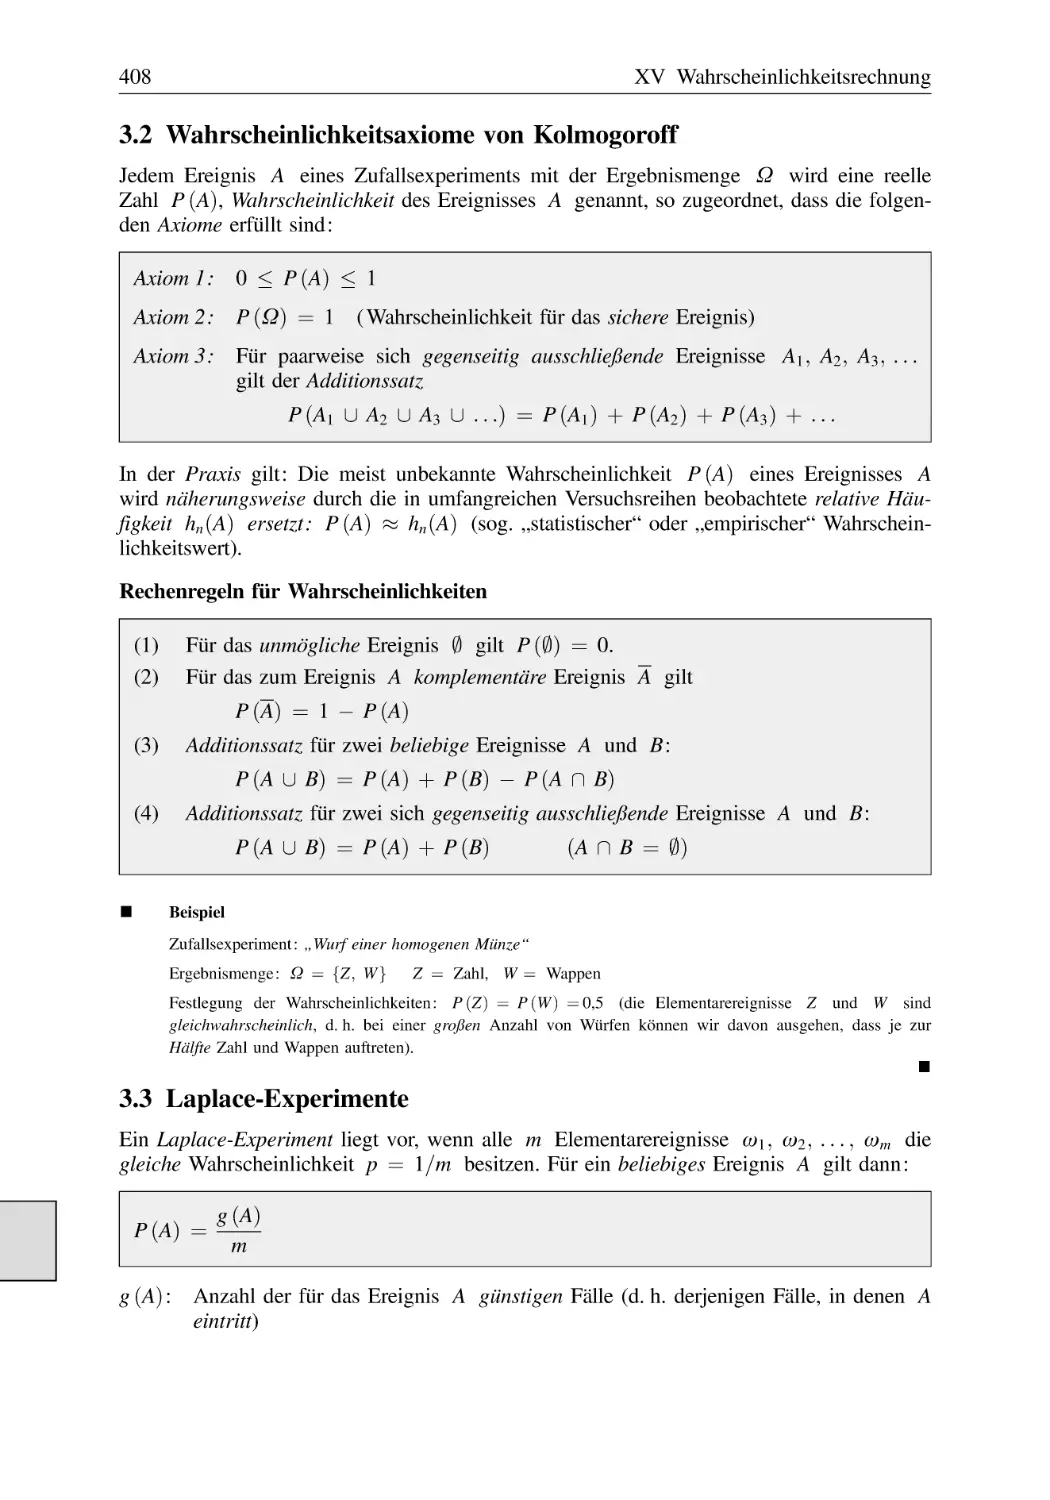 3.2 Wahrscheinlichkeitsaxiome von Kolmogoroff
3.3 Laplace-Experimente